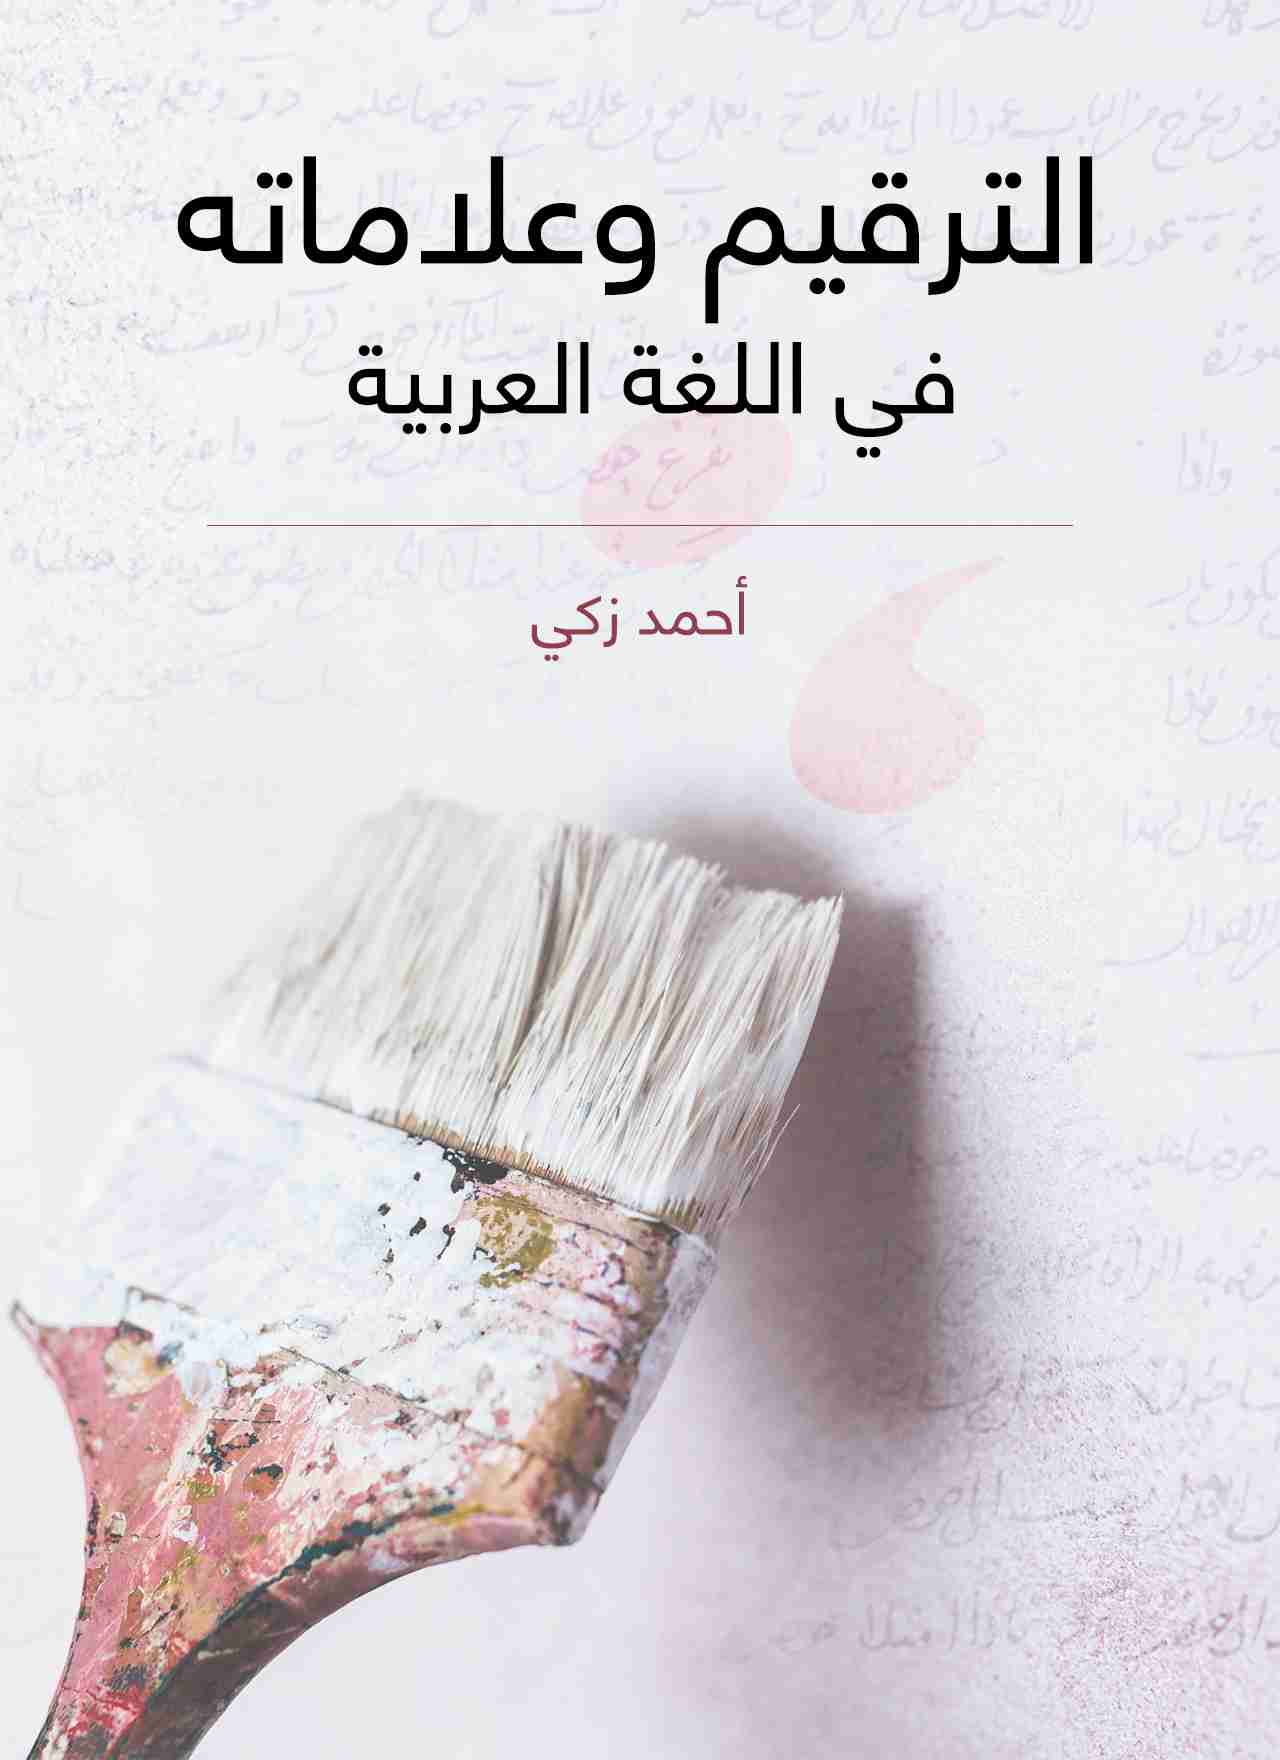 كتاب الترقيم وعلاماته في اللغة العربية لـ أحمد زكي